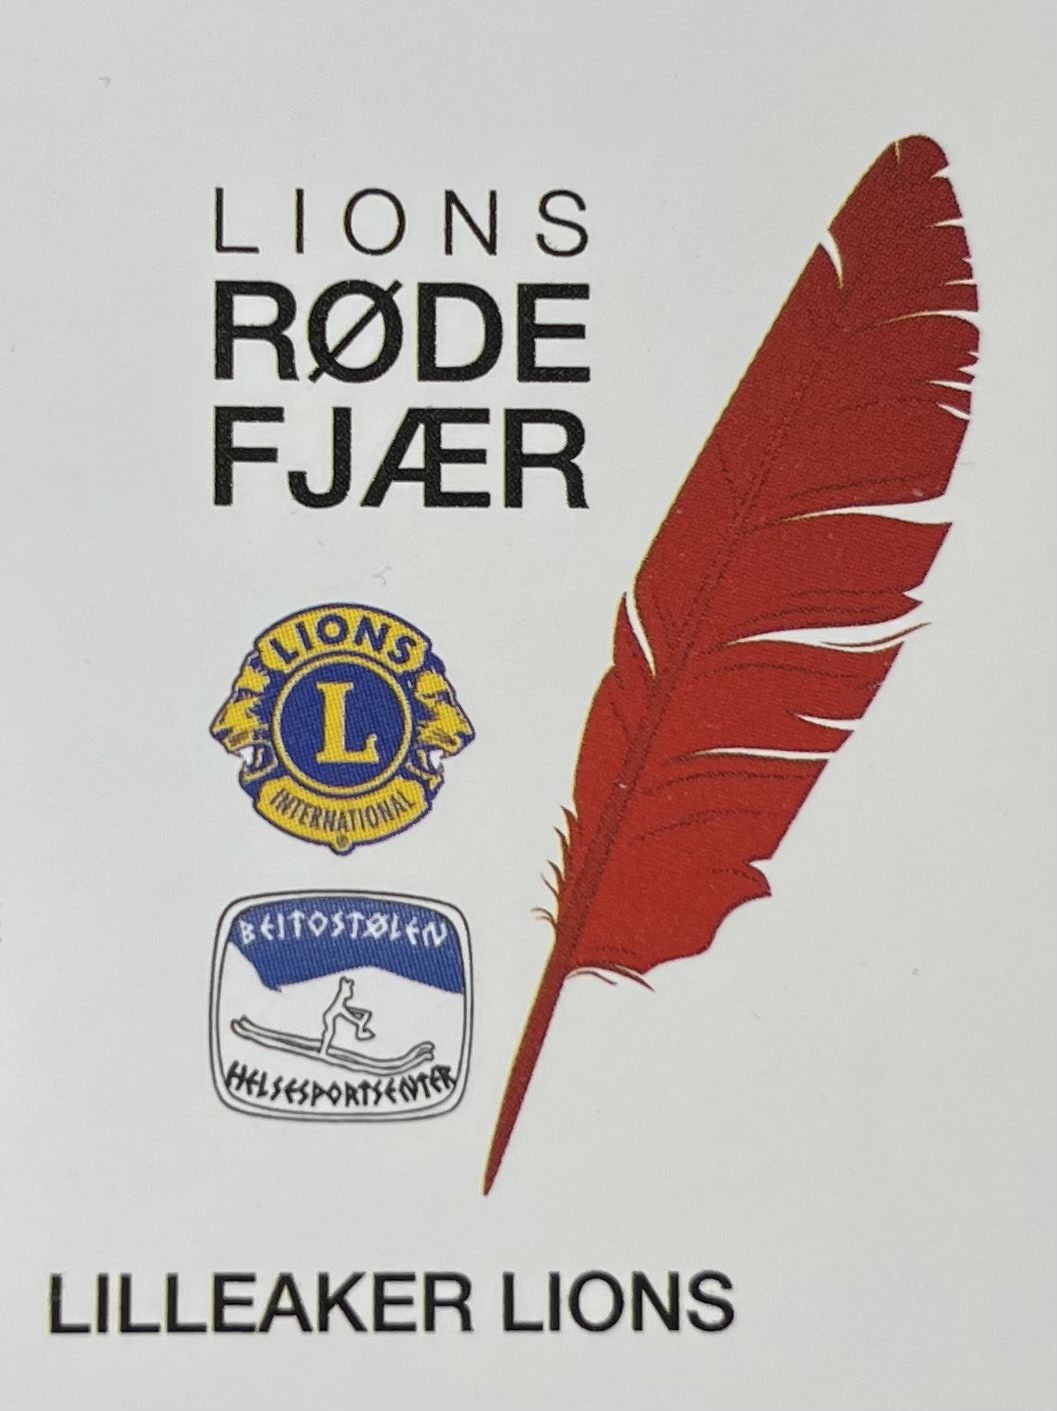 Støtt Lions Røde Fjær-aksjon